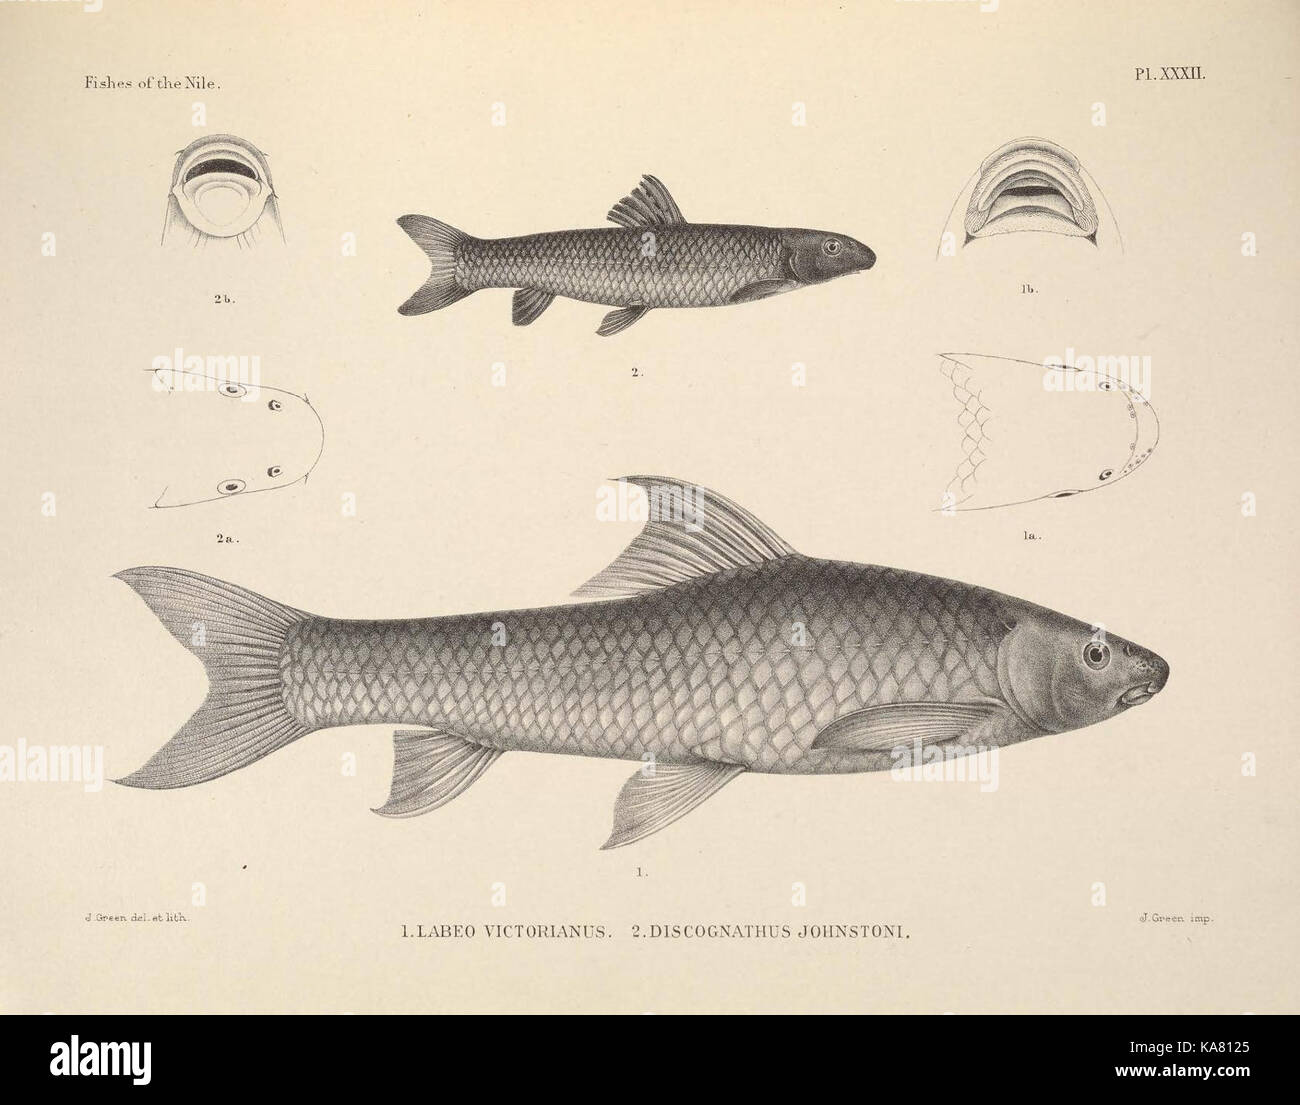 Die Fische im Nil (PL. XXXII) (6815495798) Stockfoto